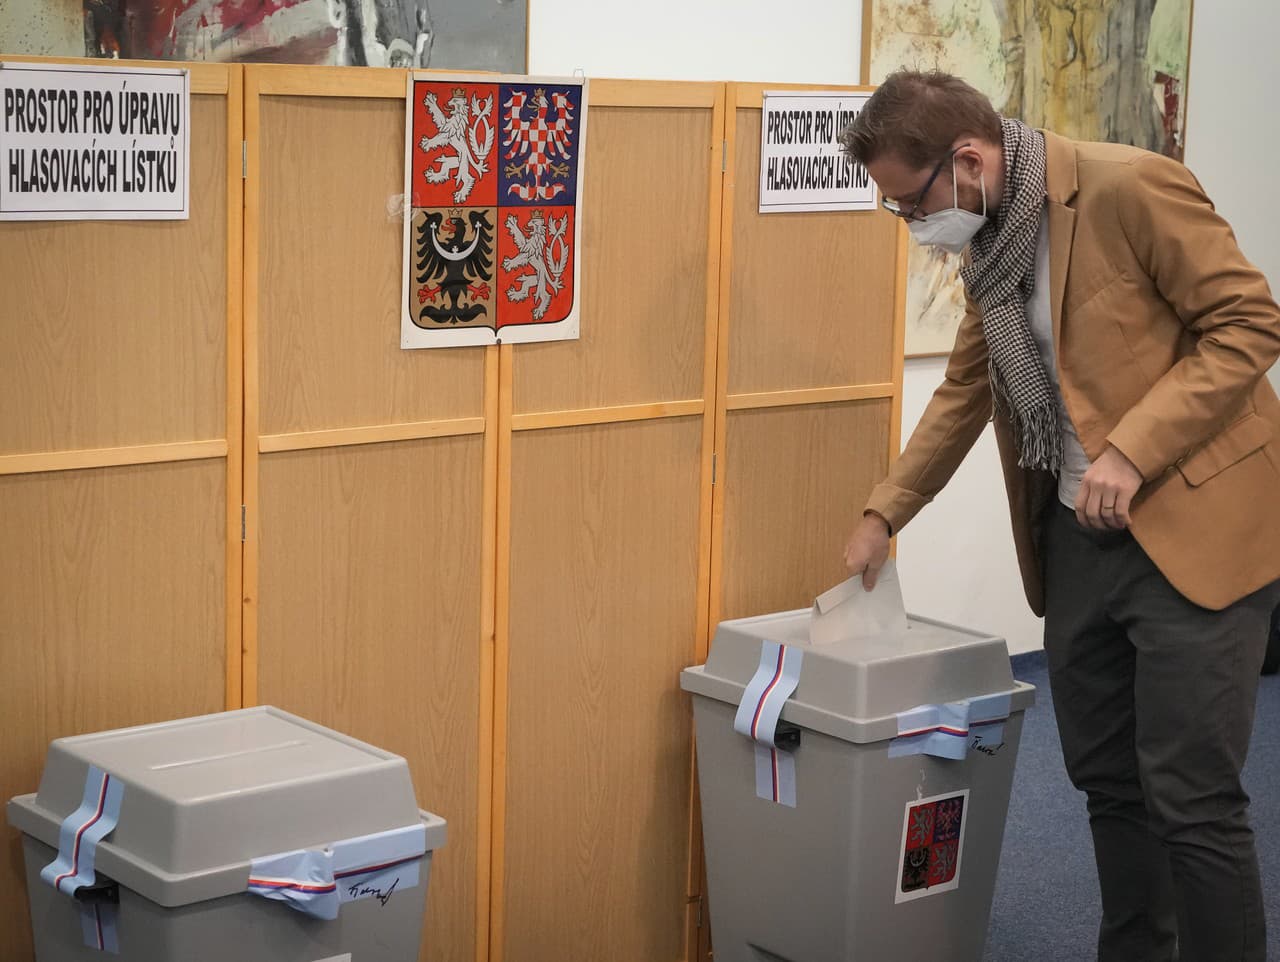 Voľby do Poslaneckej snemovne Parlamentu Českej republiky sa uskutočnili 8. a 9. októbra 2021